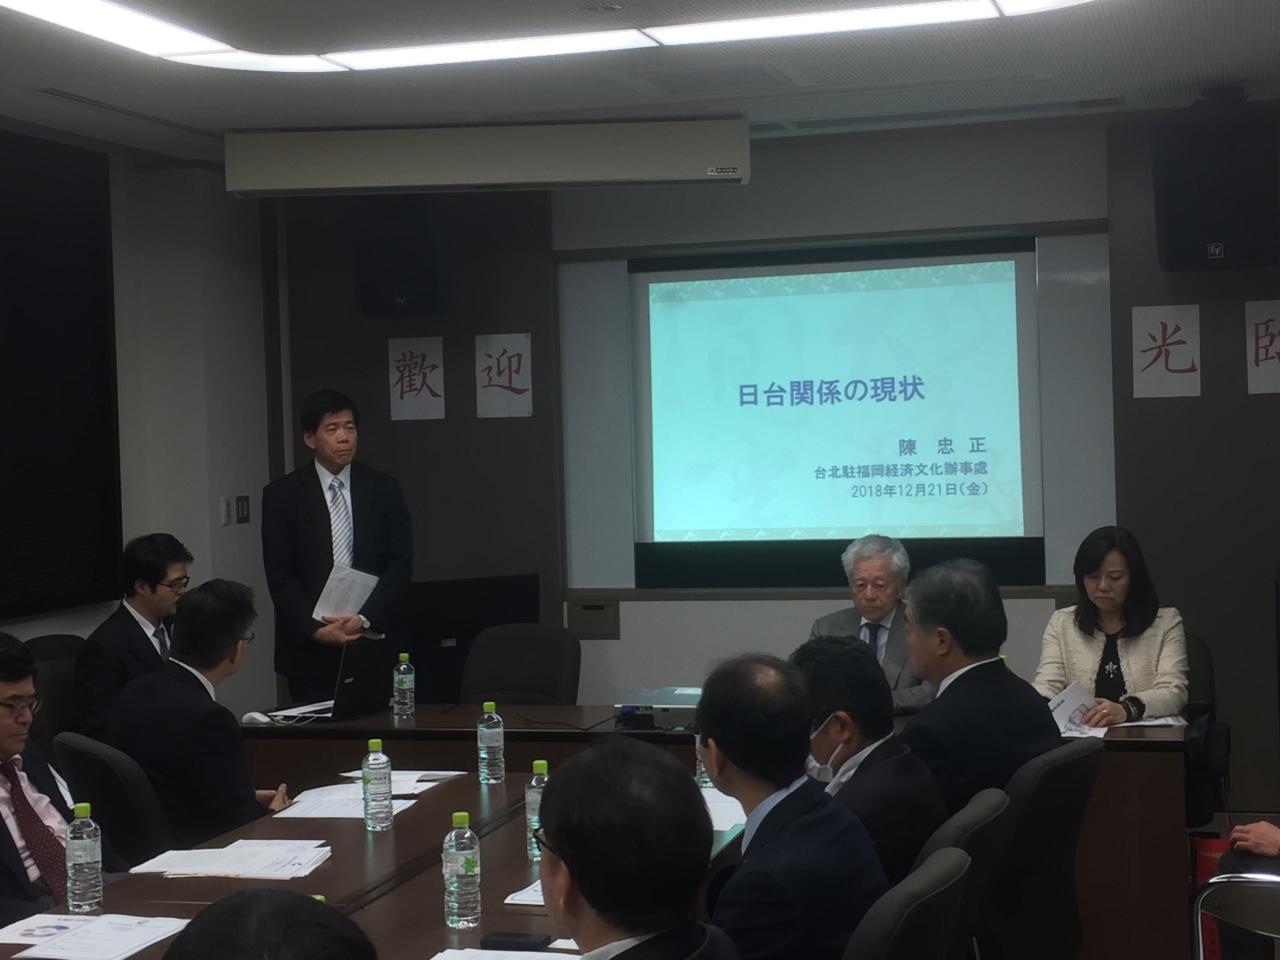 12月21日、当弁事処のお招きにより福岡県中小企業経営者協会等一行30名が参加した。当弁事処で陳総領事が「日台関係の現状」を題として講演会を行った。